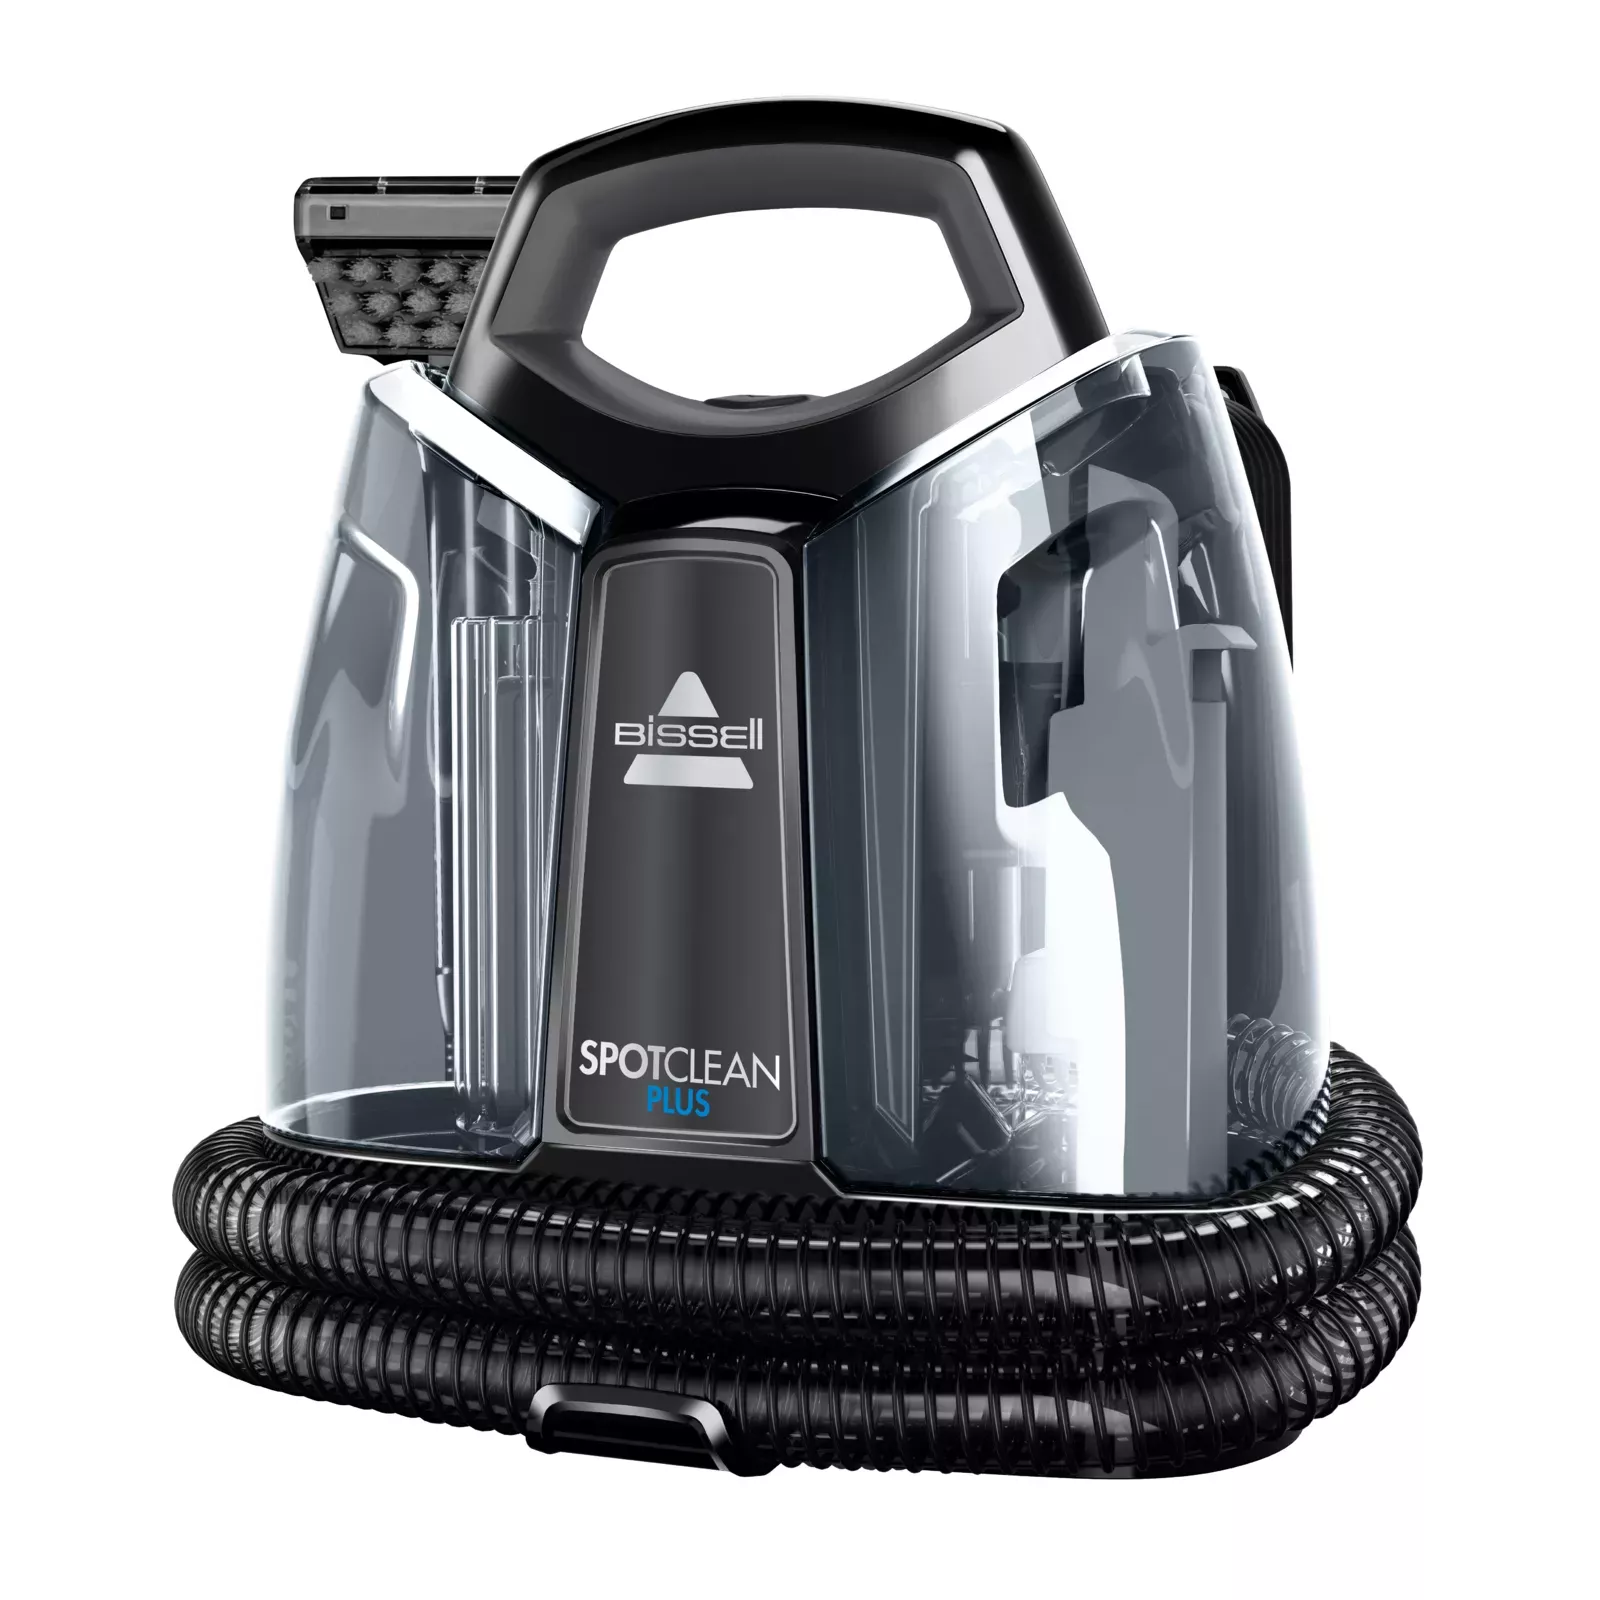 BISSELL 3724N SPOTCLEAN Plus Vacuum Cleaner User Manual